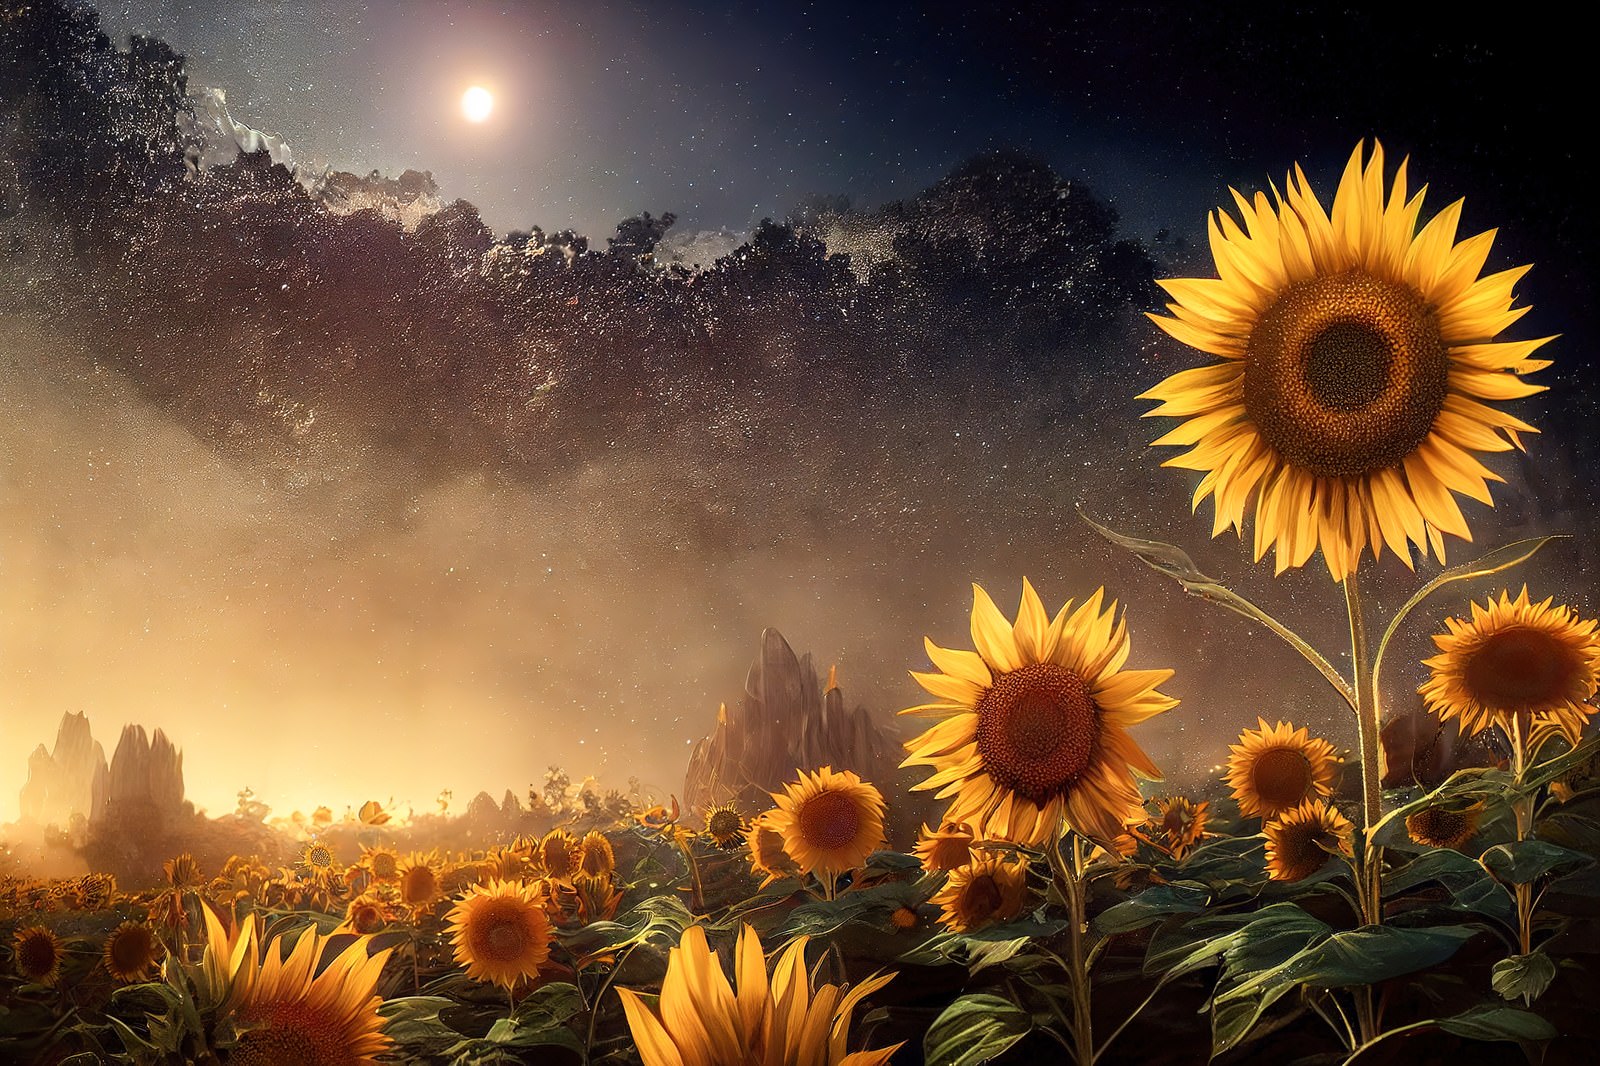 「夜空と向日葵 | フリー素材のぱくたそ」の写真